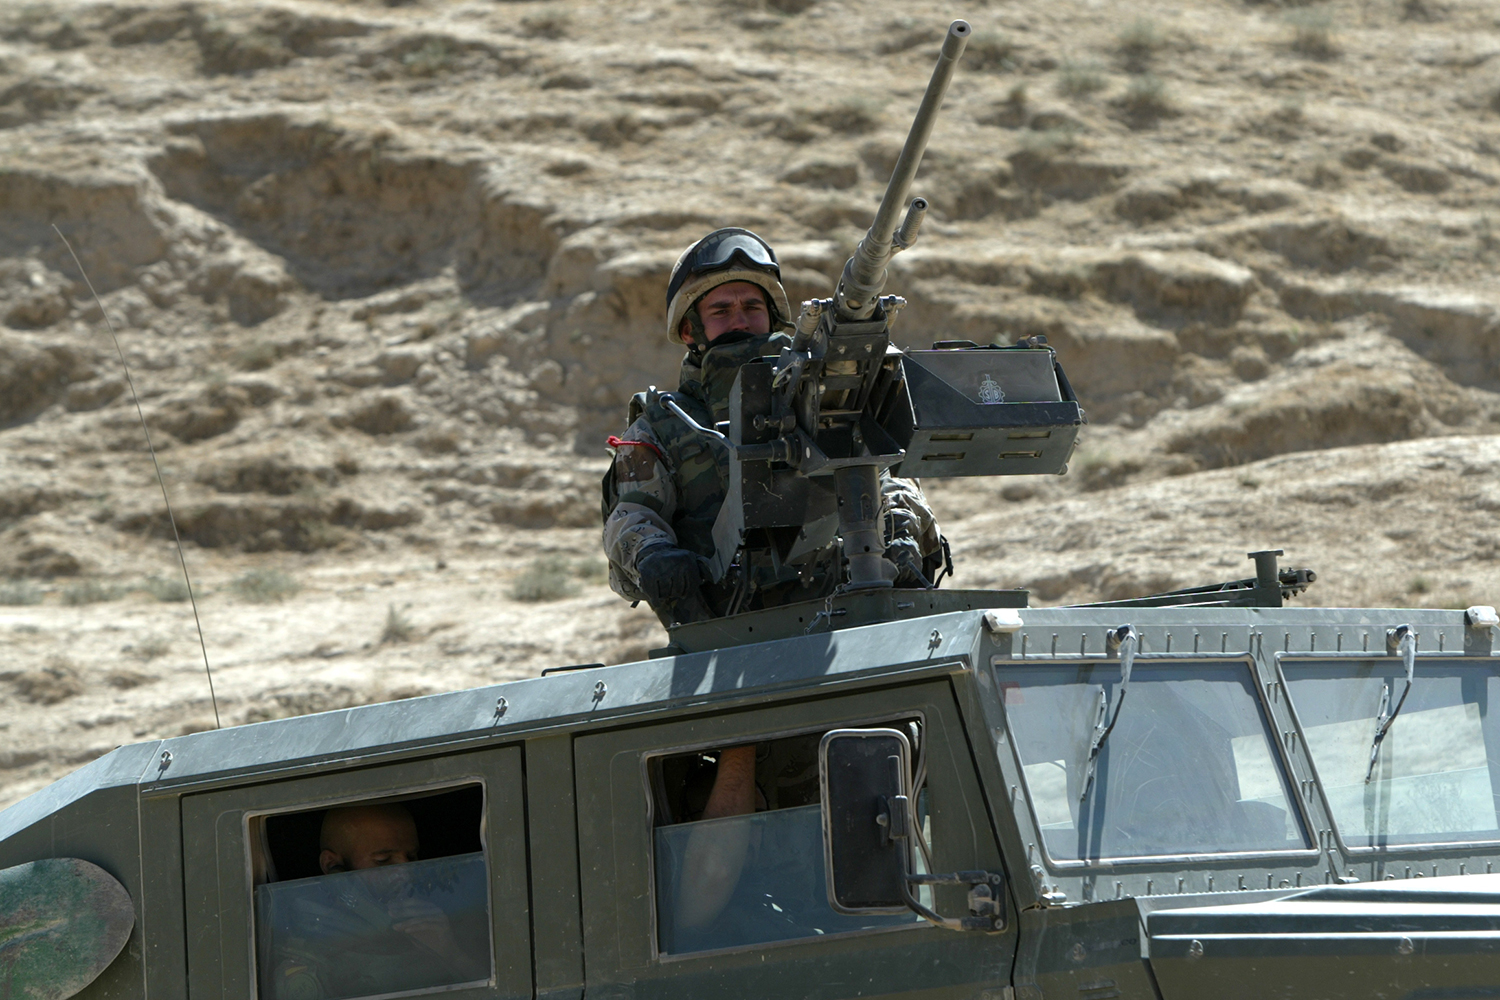 España saldrá de Afganistán en octubre tras 14 años de misión. #7dias